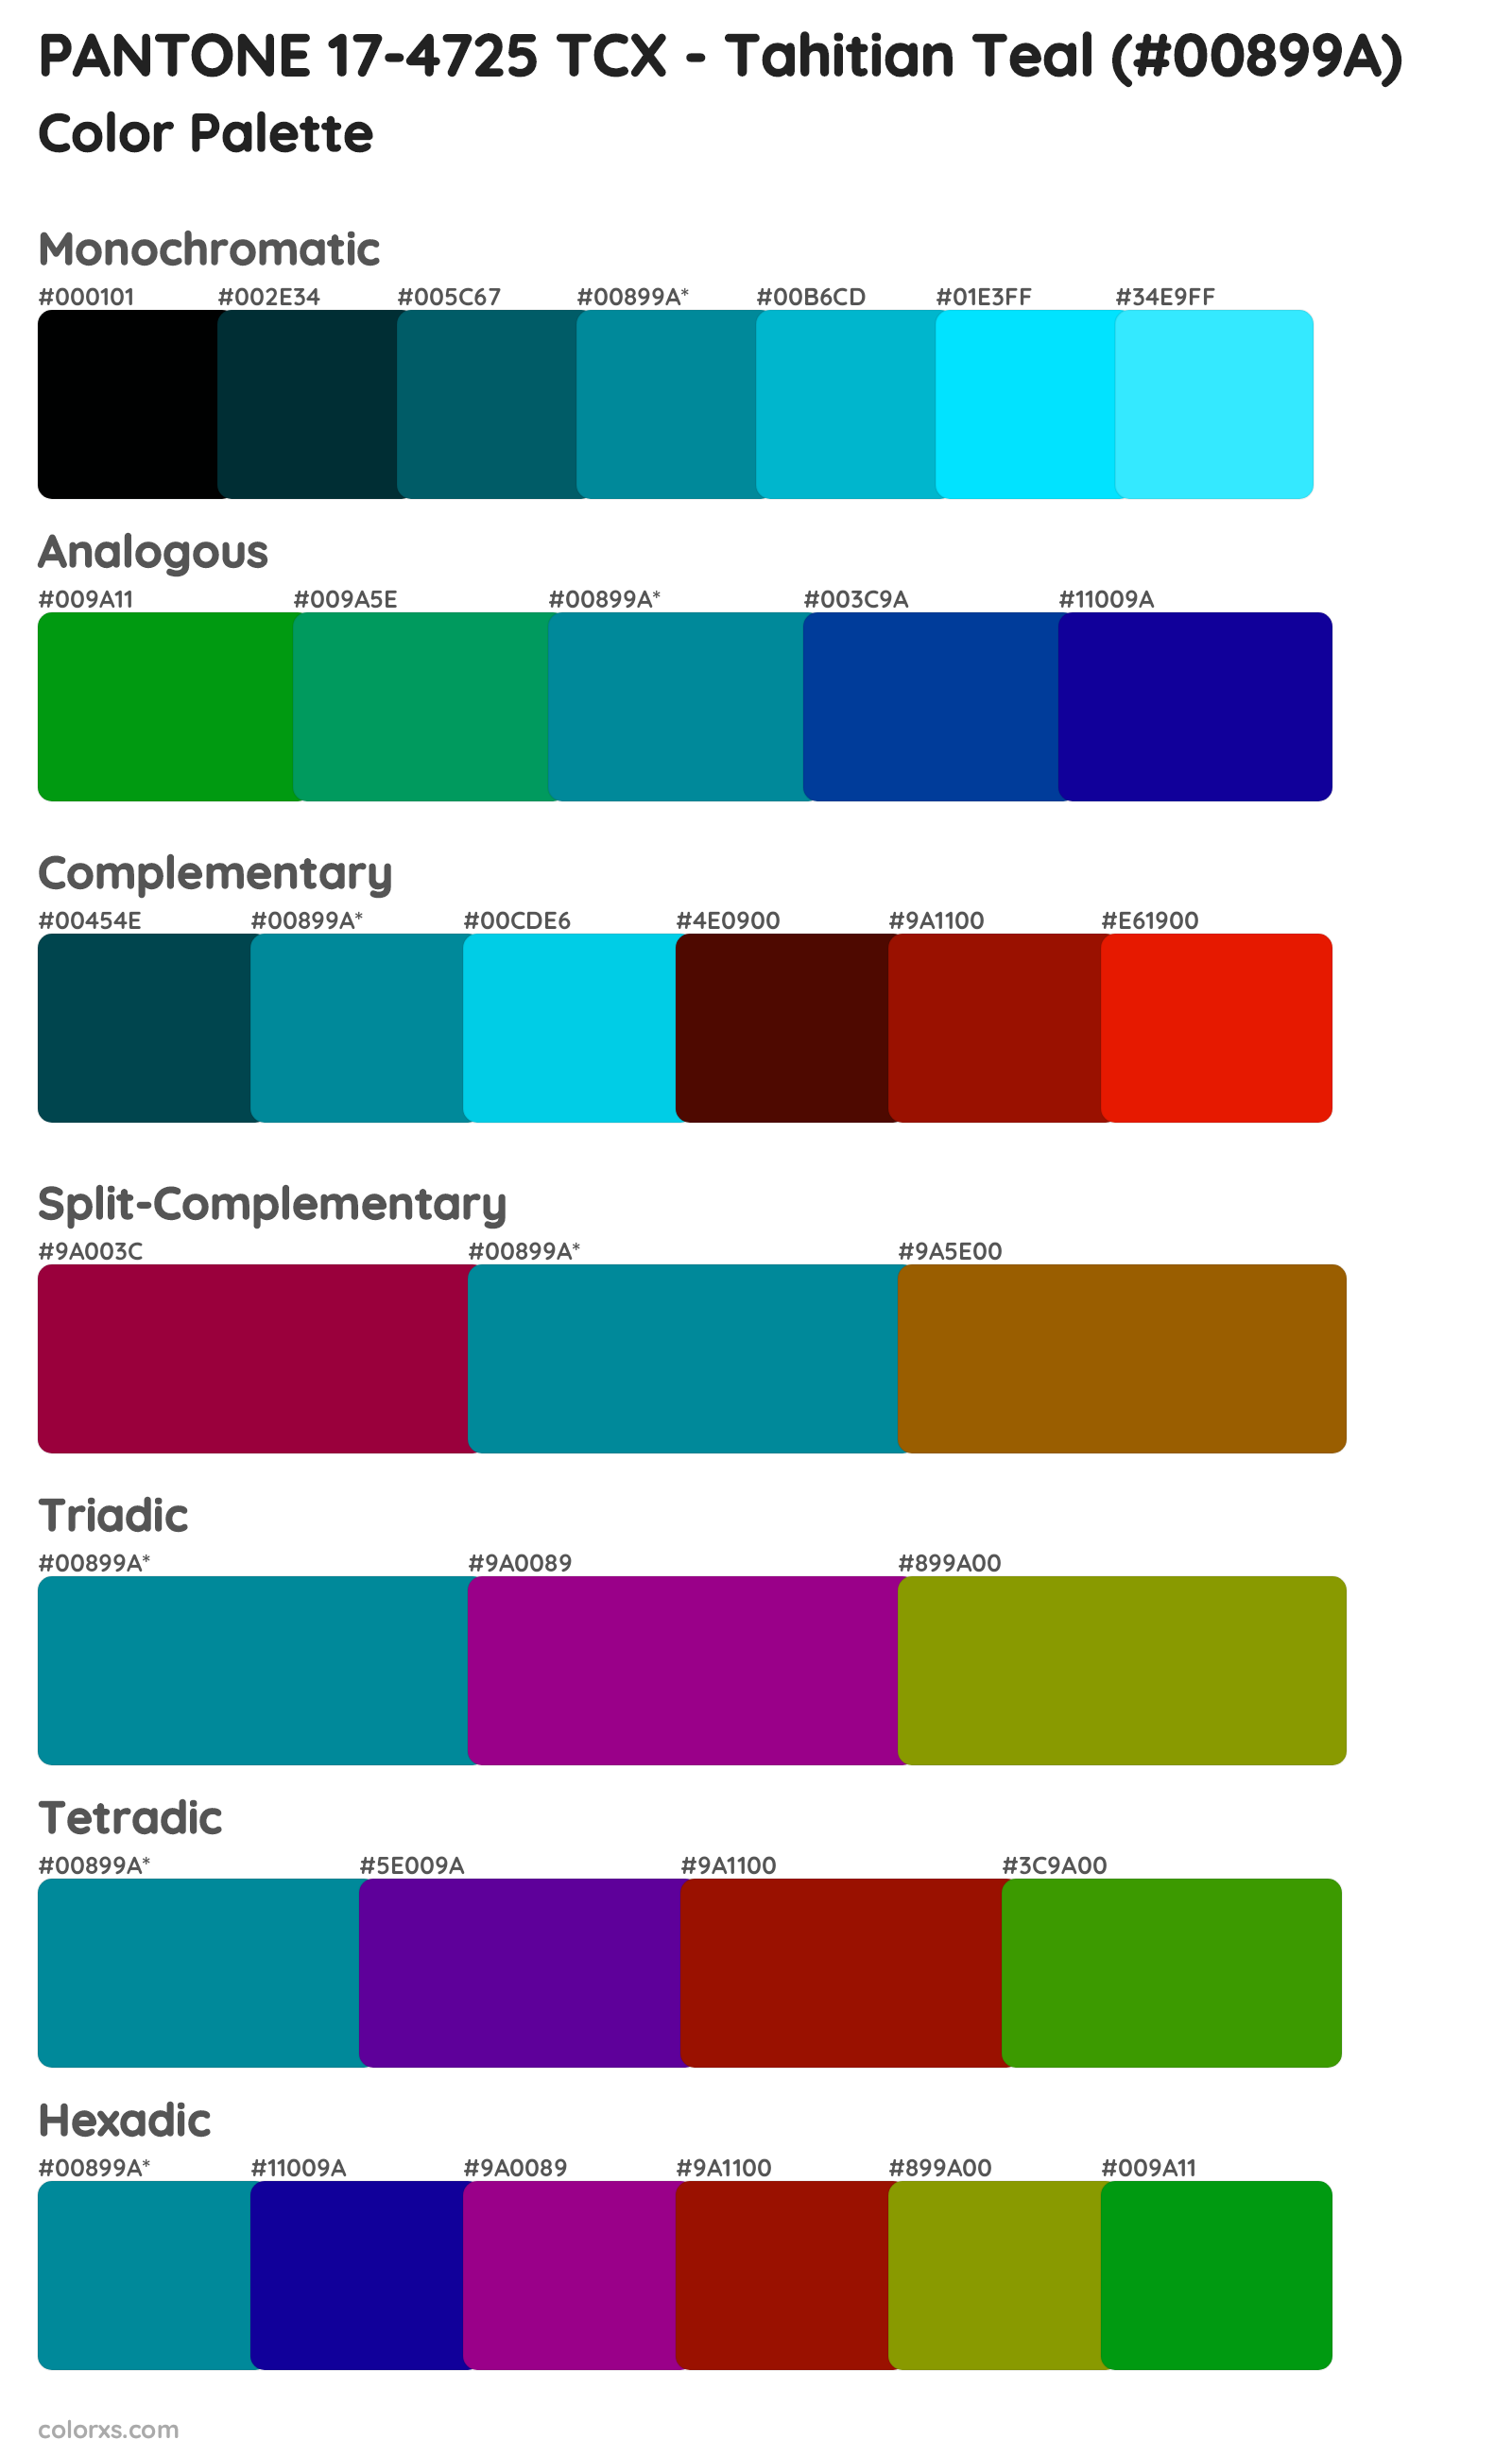 PANTONE 17-4725 TCX - Tahitian Teal Color Scheme Palettes